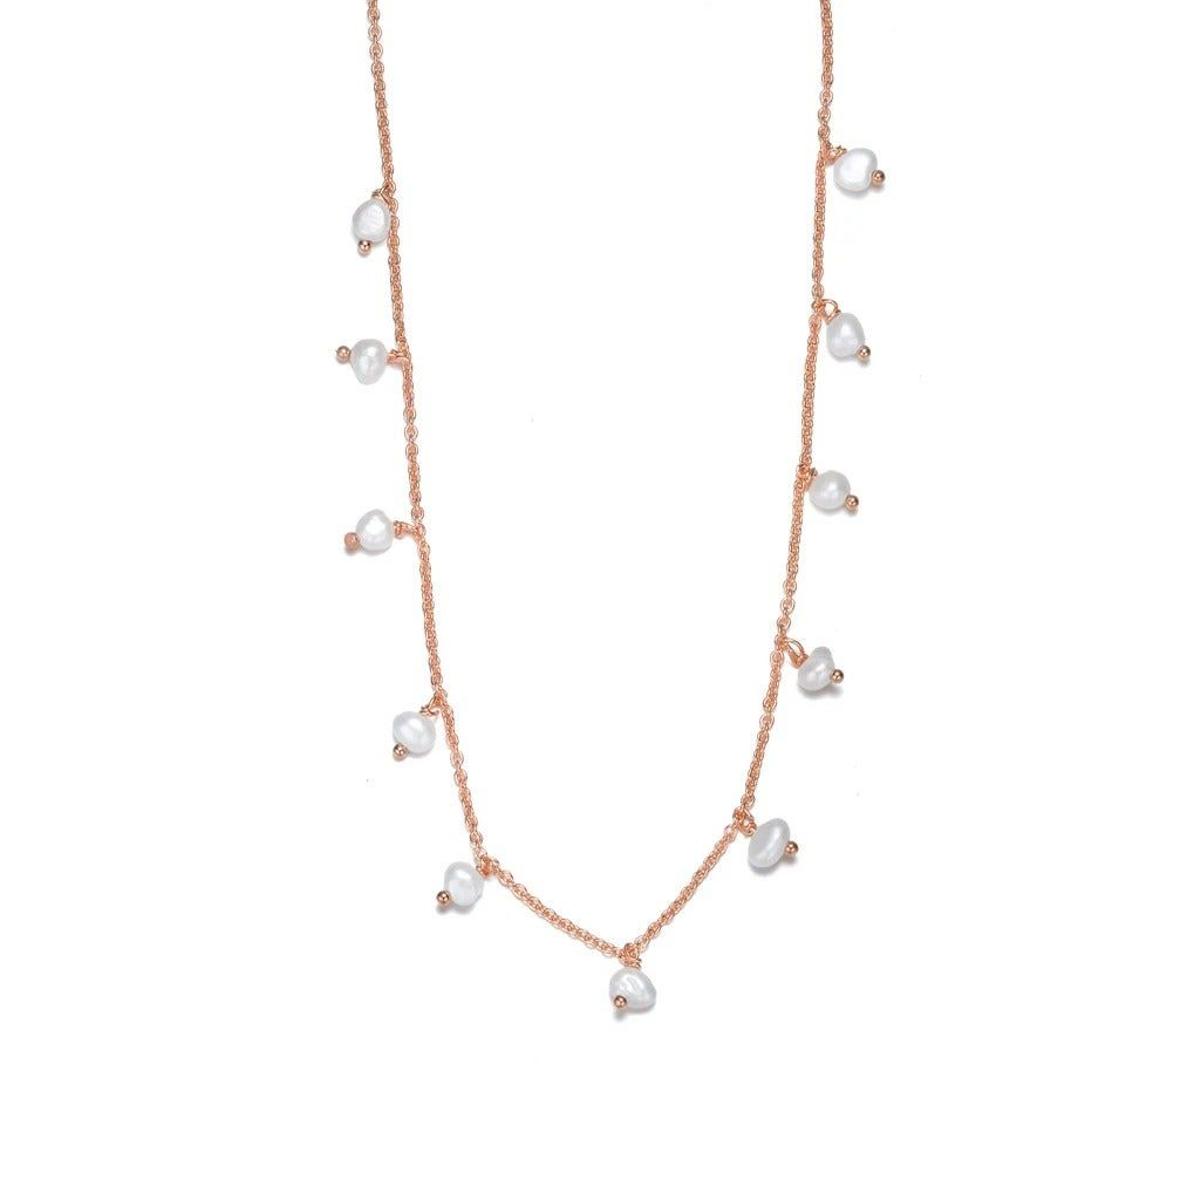 Collar Full Perlas, de Apodemia (129 euros)